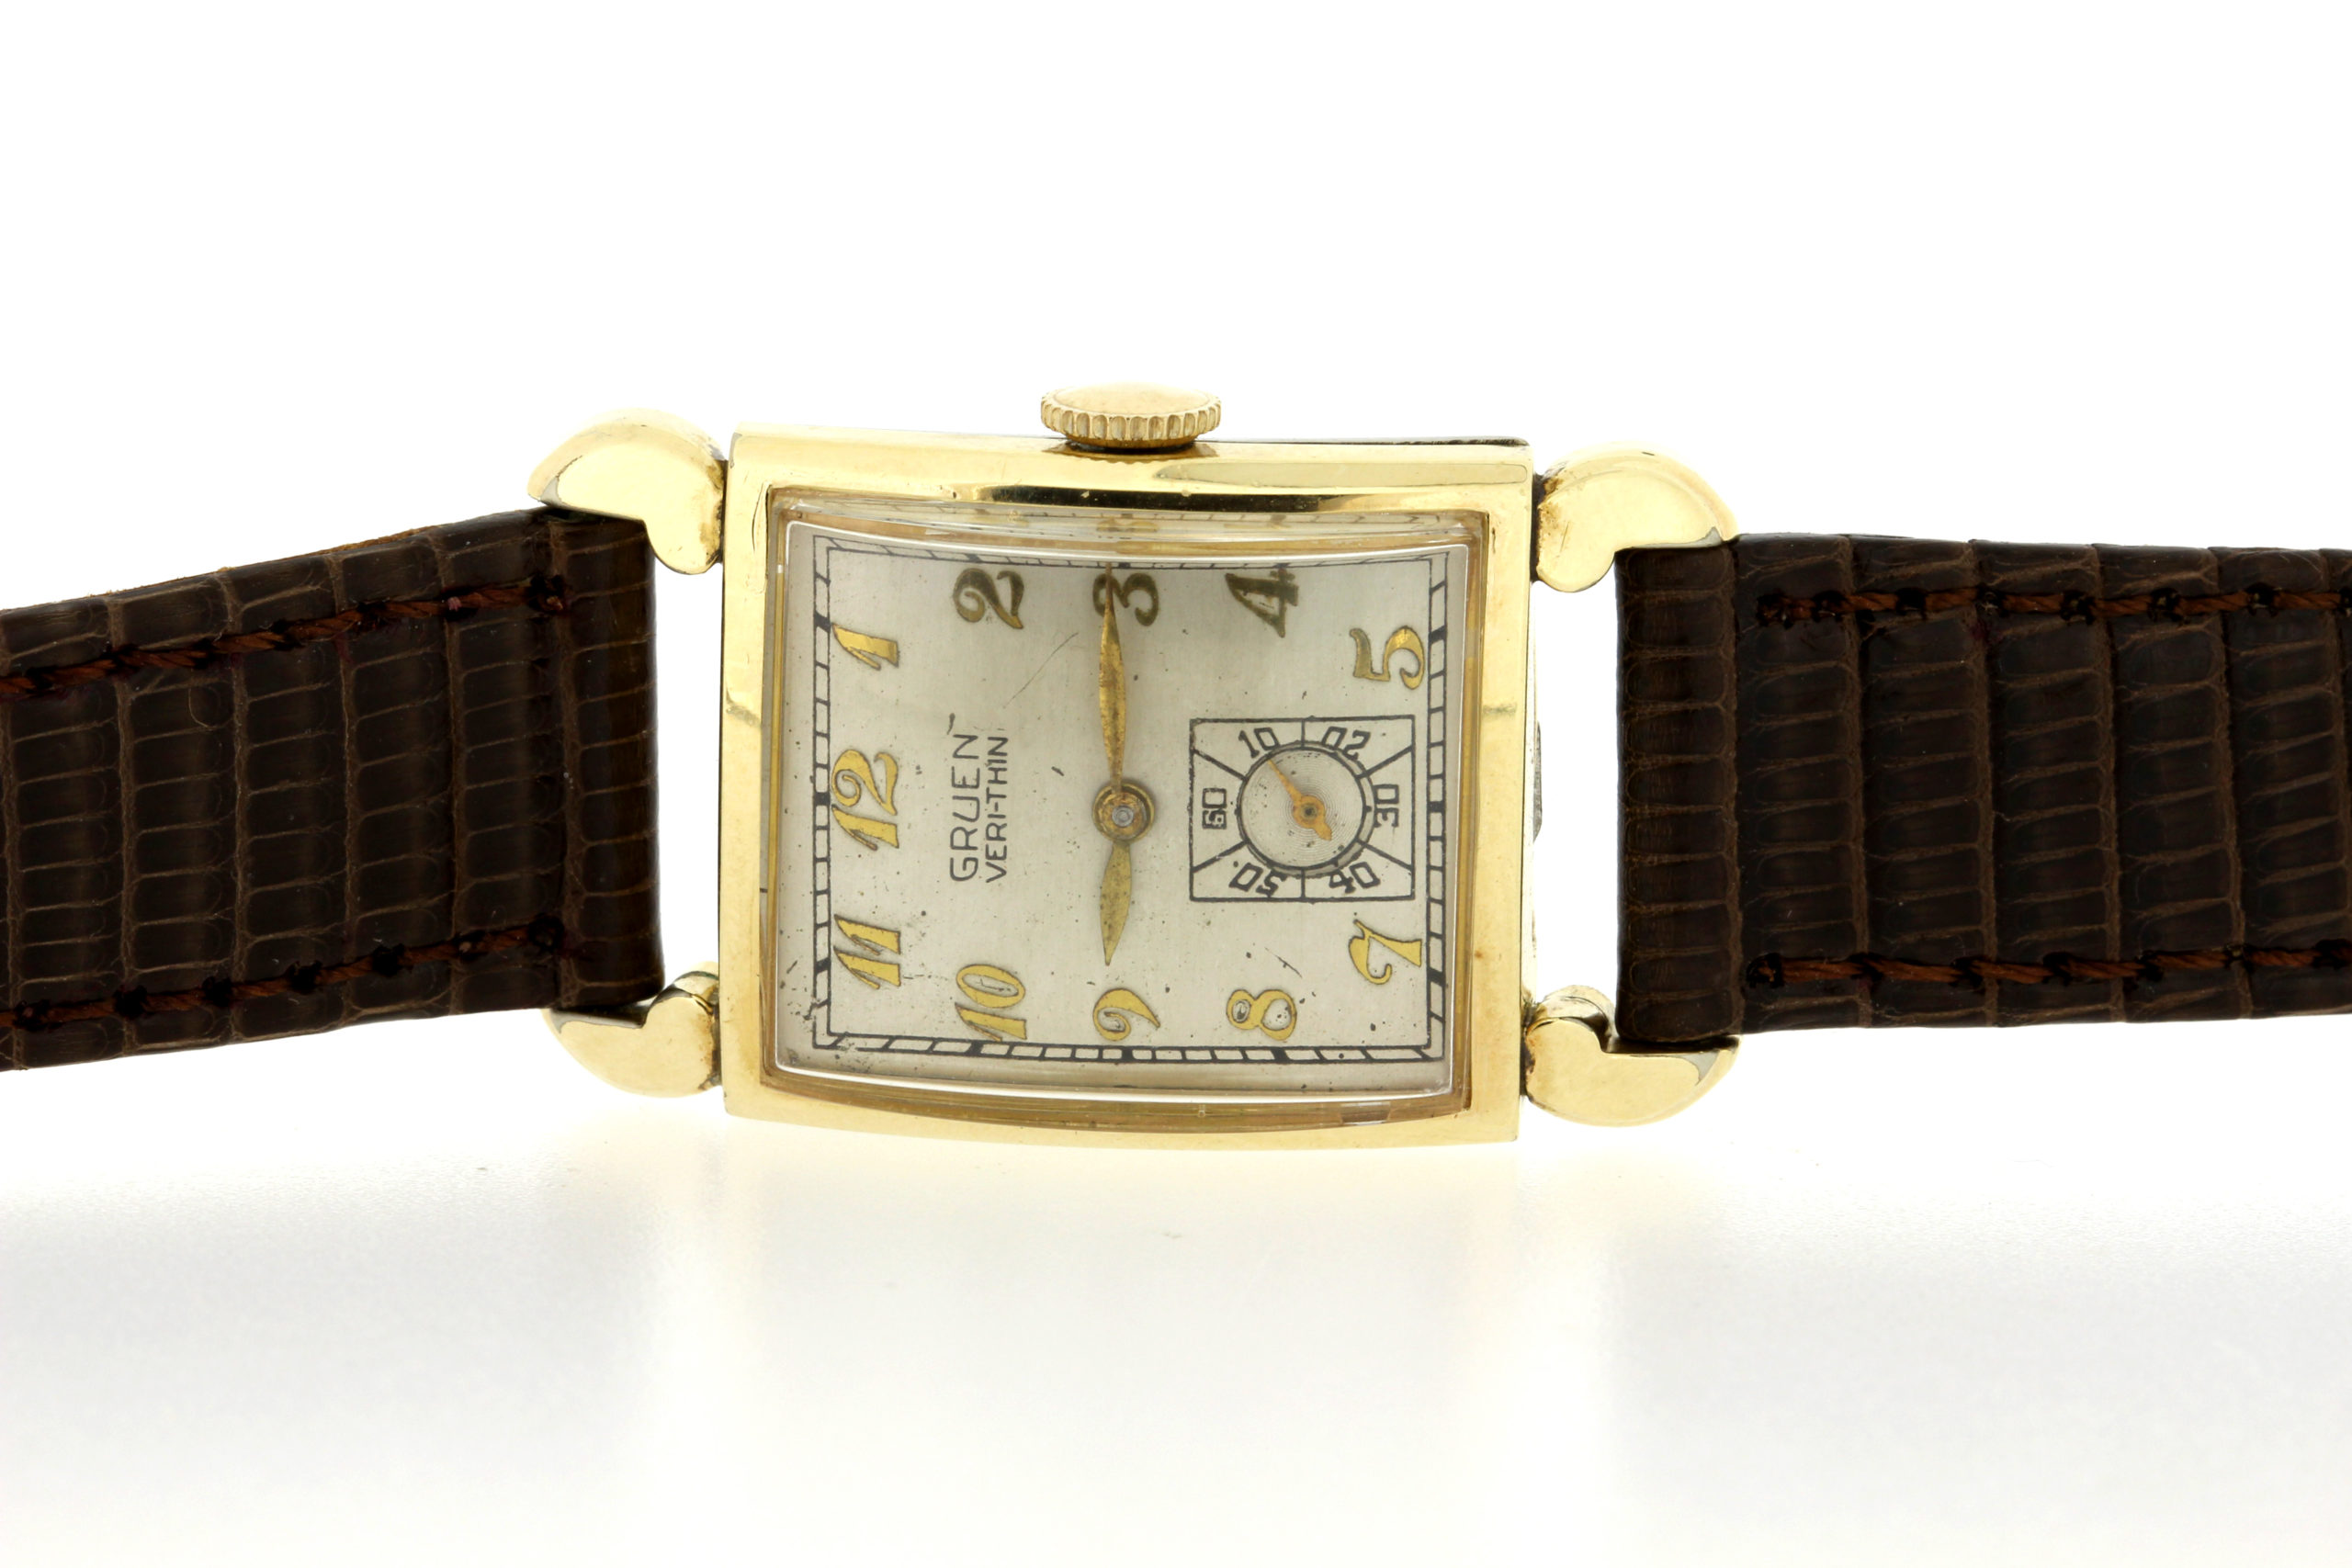 Gruen Veri-thin gold-filled Wrist Watch - Timekeepersclayton